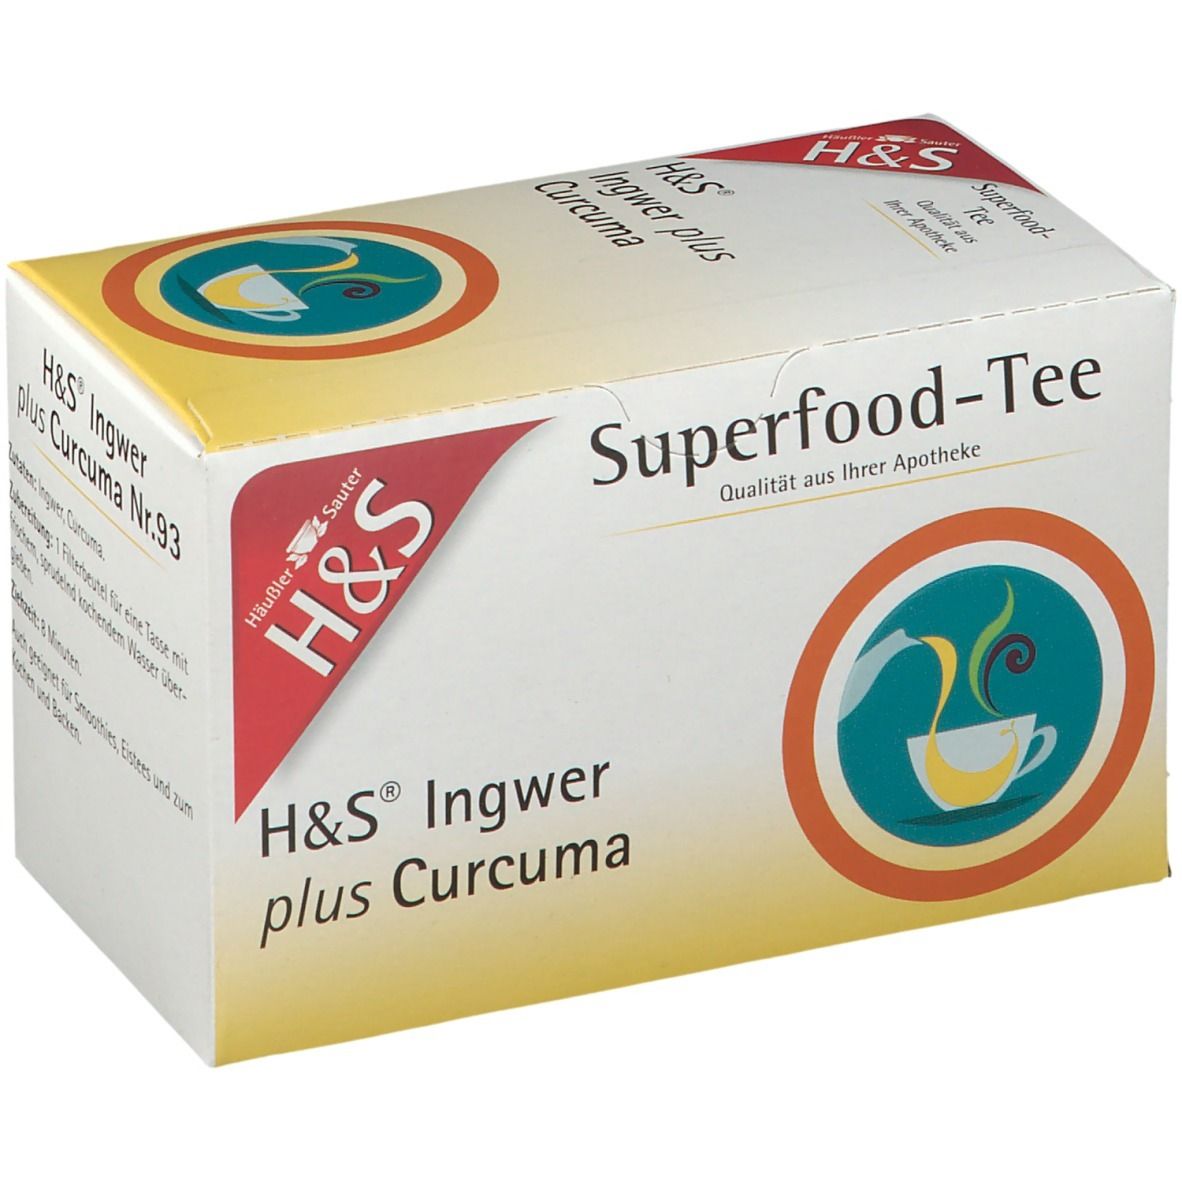 H&S Superfood-Tee Ingwer plus Curcuma